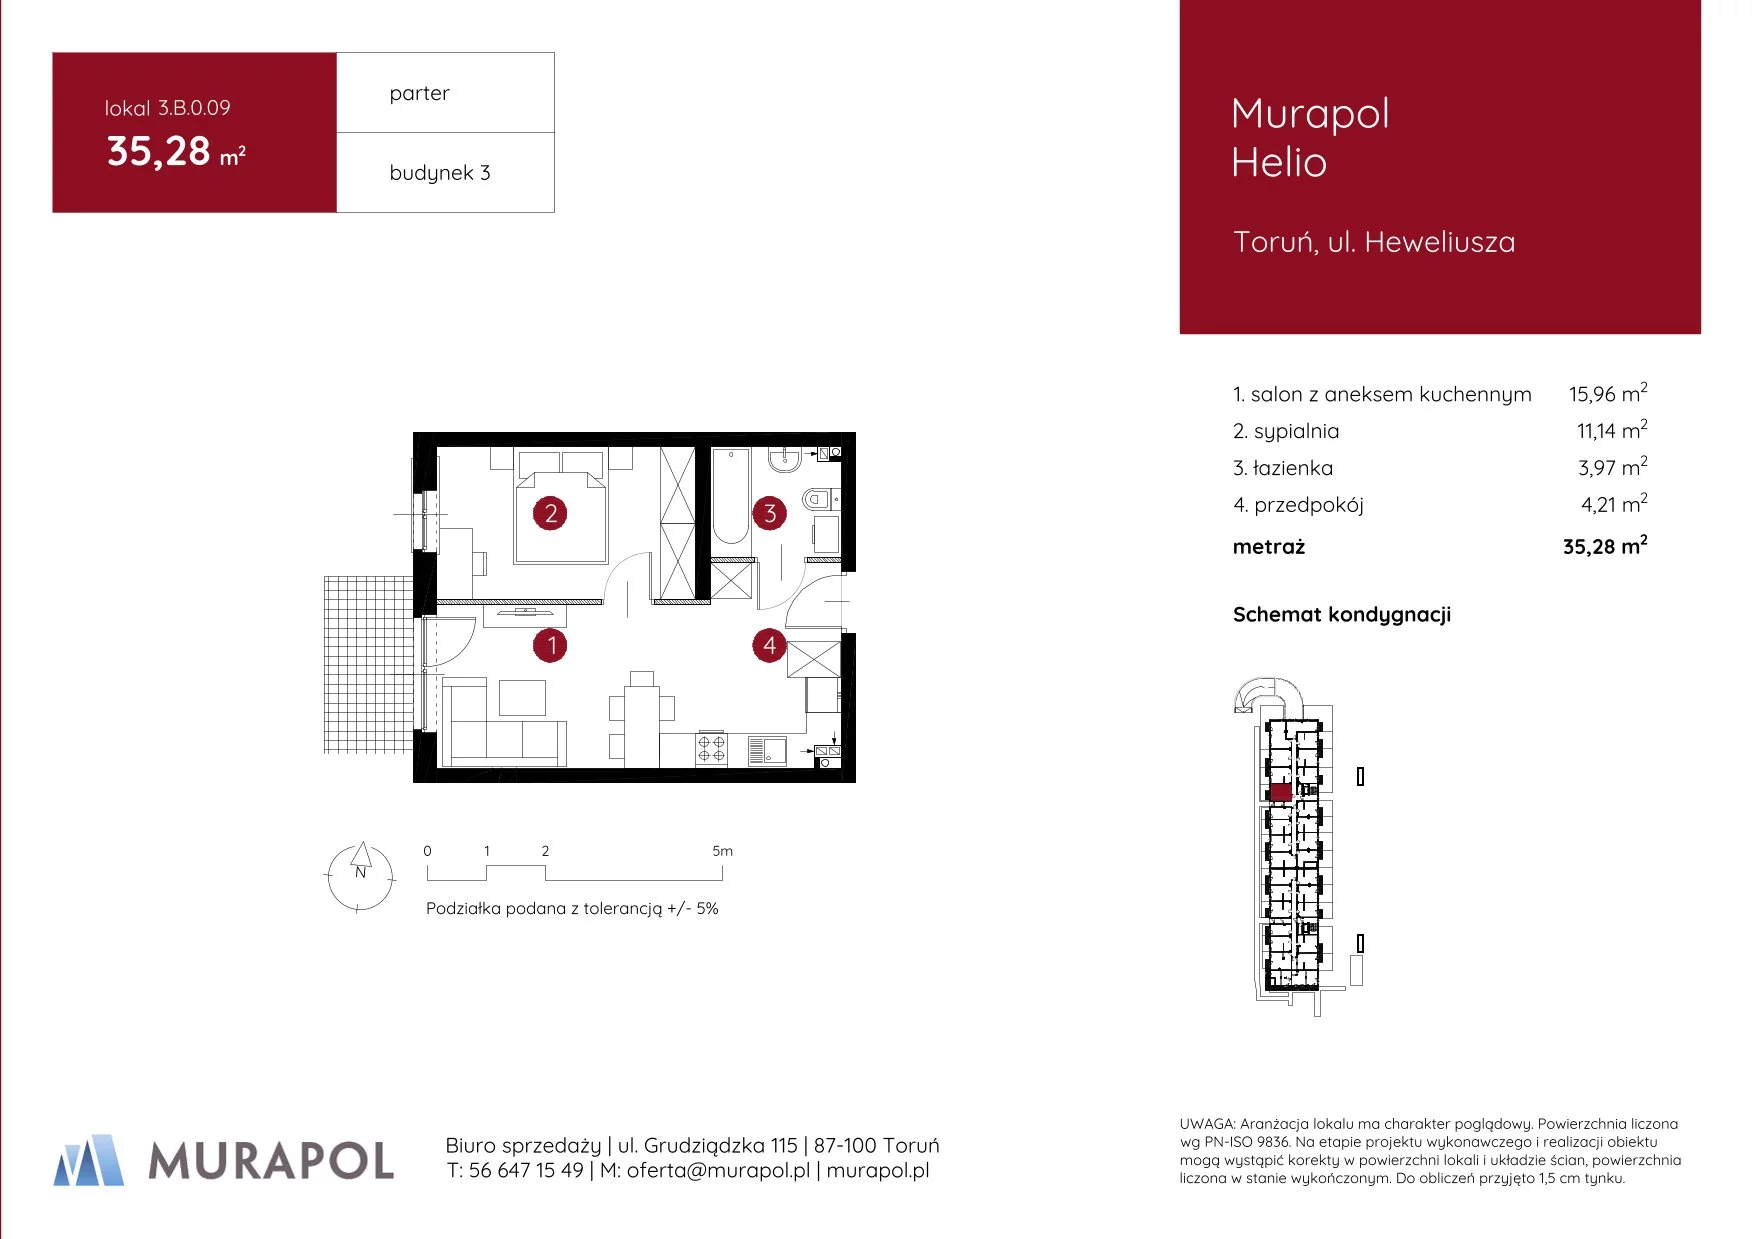 Mieszkanie 35,28 m², parter, oferta nr 3.B.0.09, Murapol Helio, Toruń, Wrzosy, JAR, ul. Heweliusza